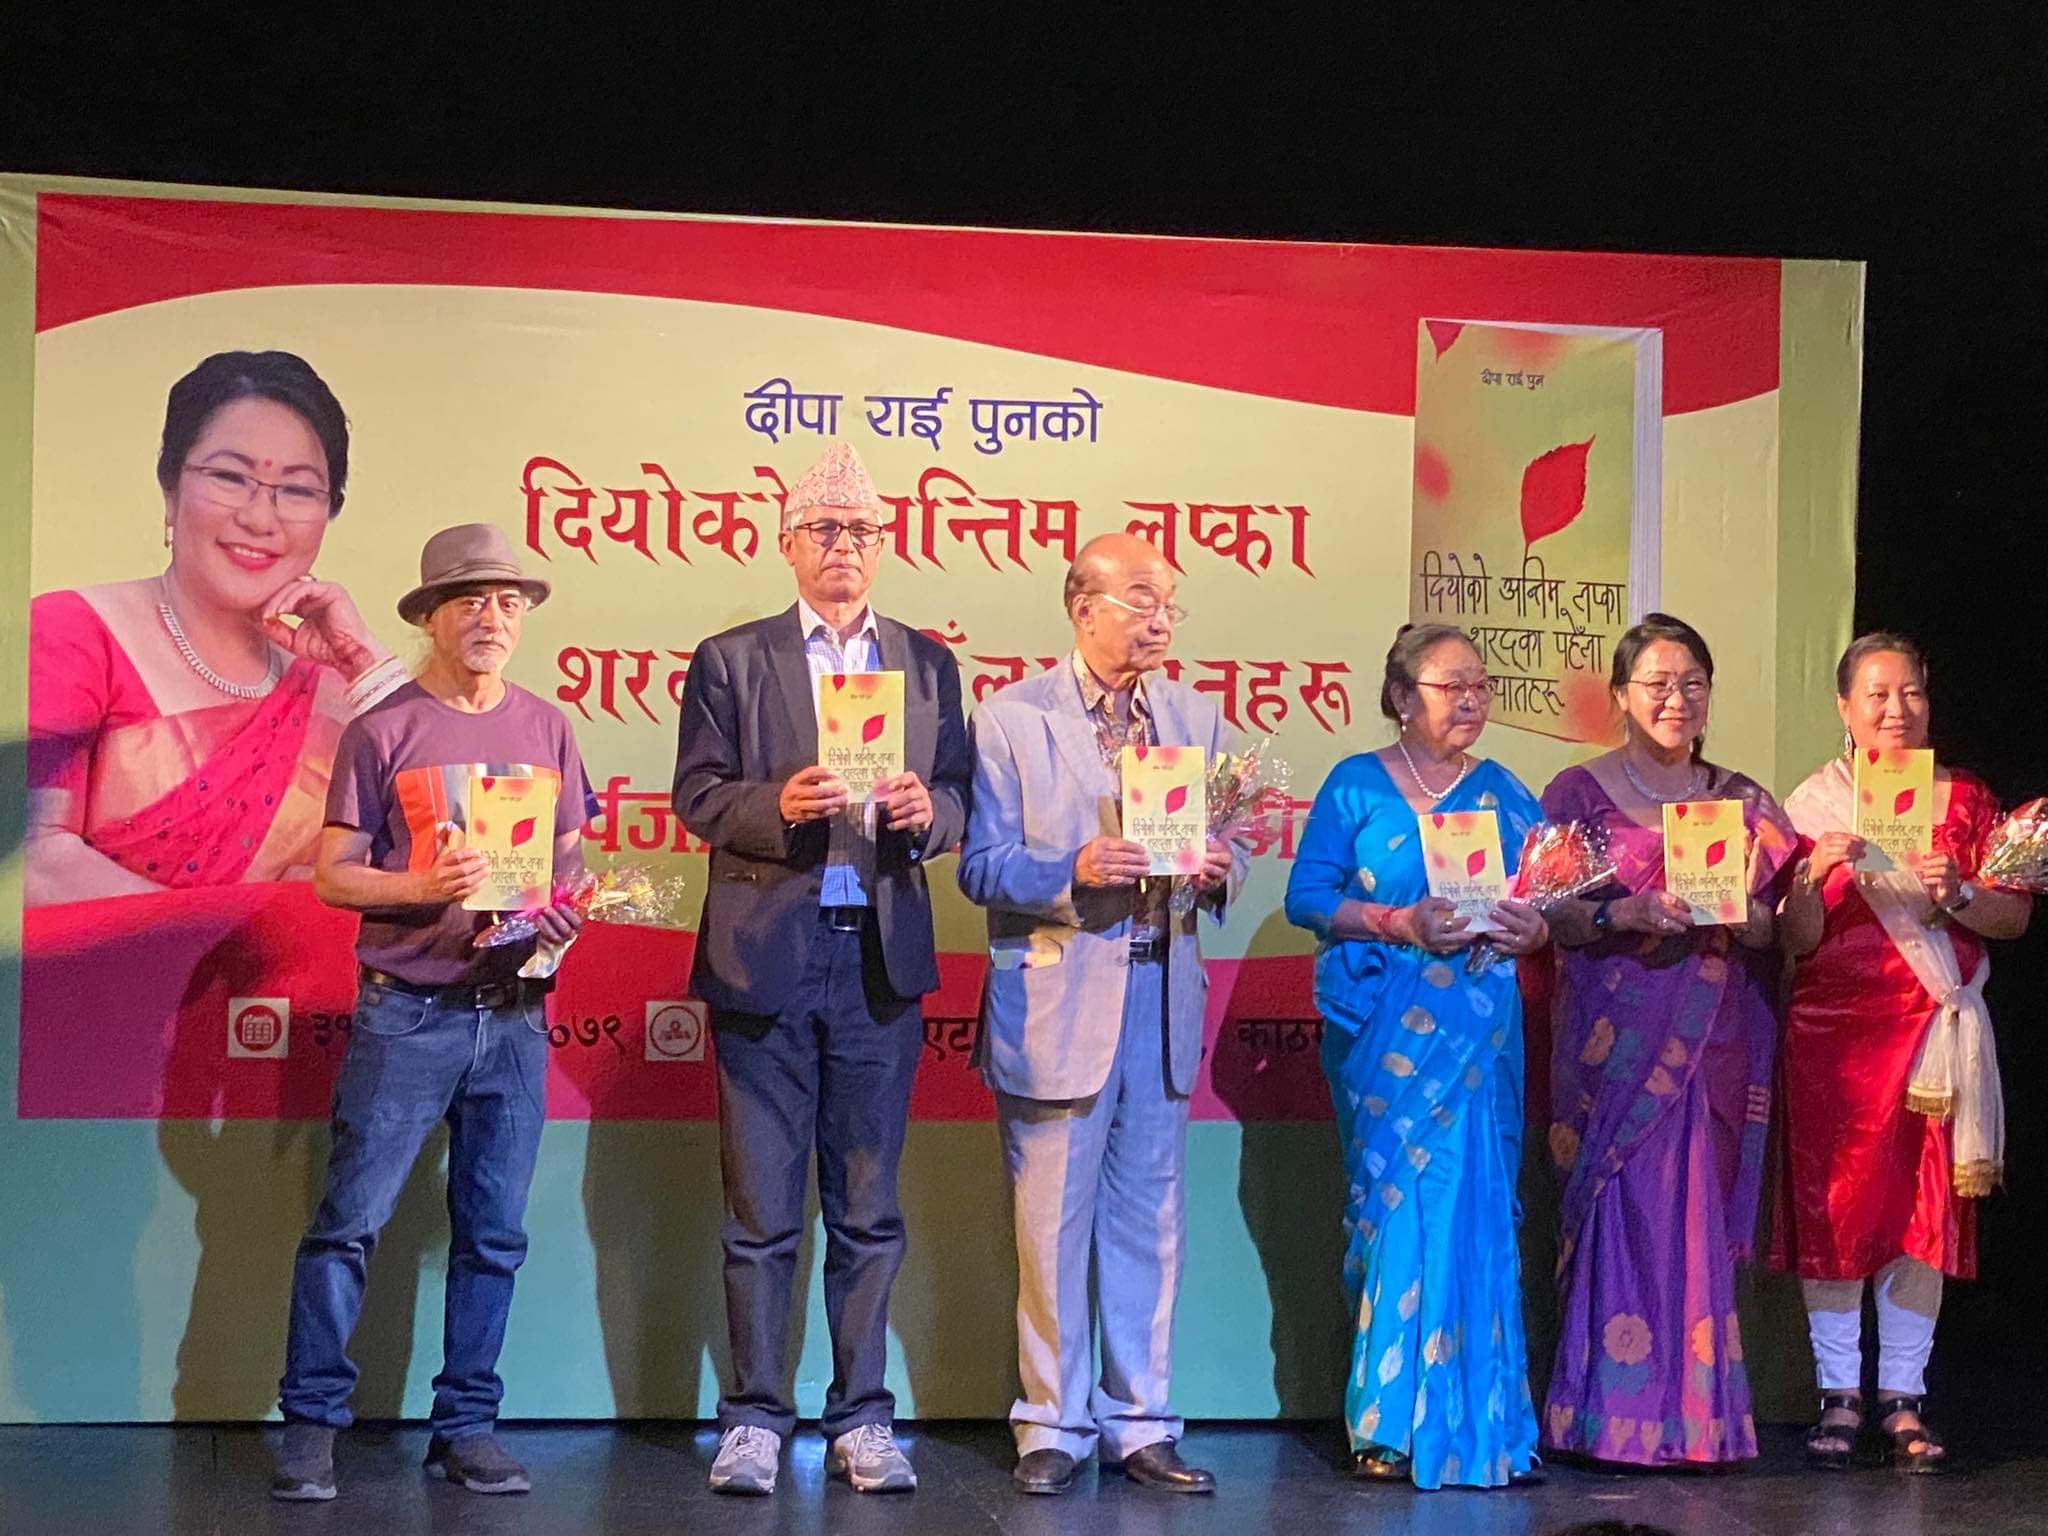 दीपा राई पुनको कविता संग्रह सार्वजनिक